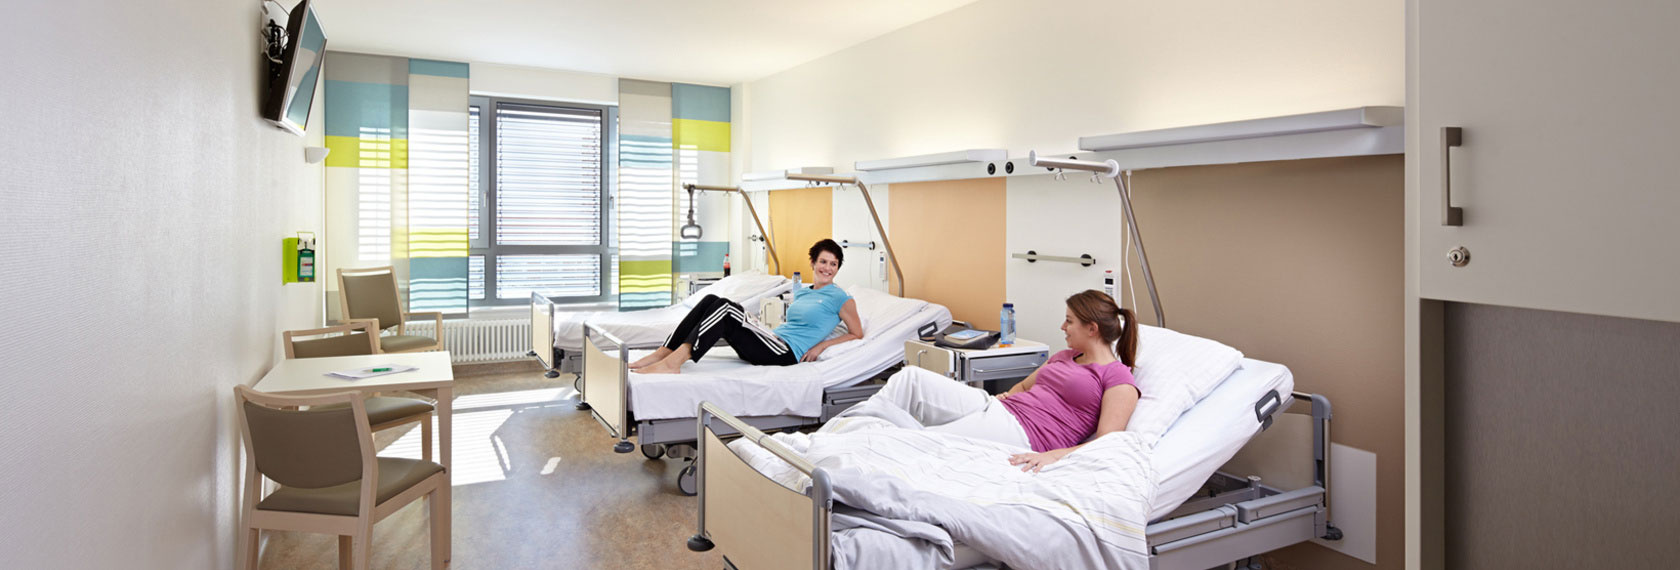 Die hellen und modern eingerichteten Patientenzimmer sorgen für eine angenehme Atmosphäre während des Aufenthaltes